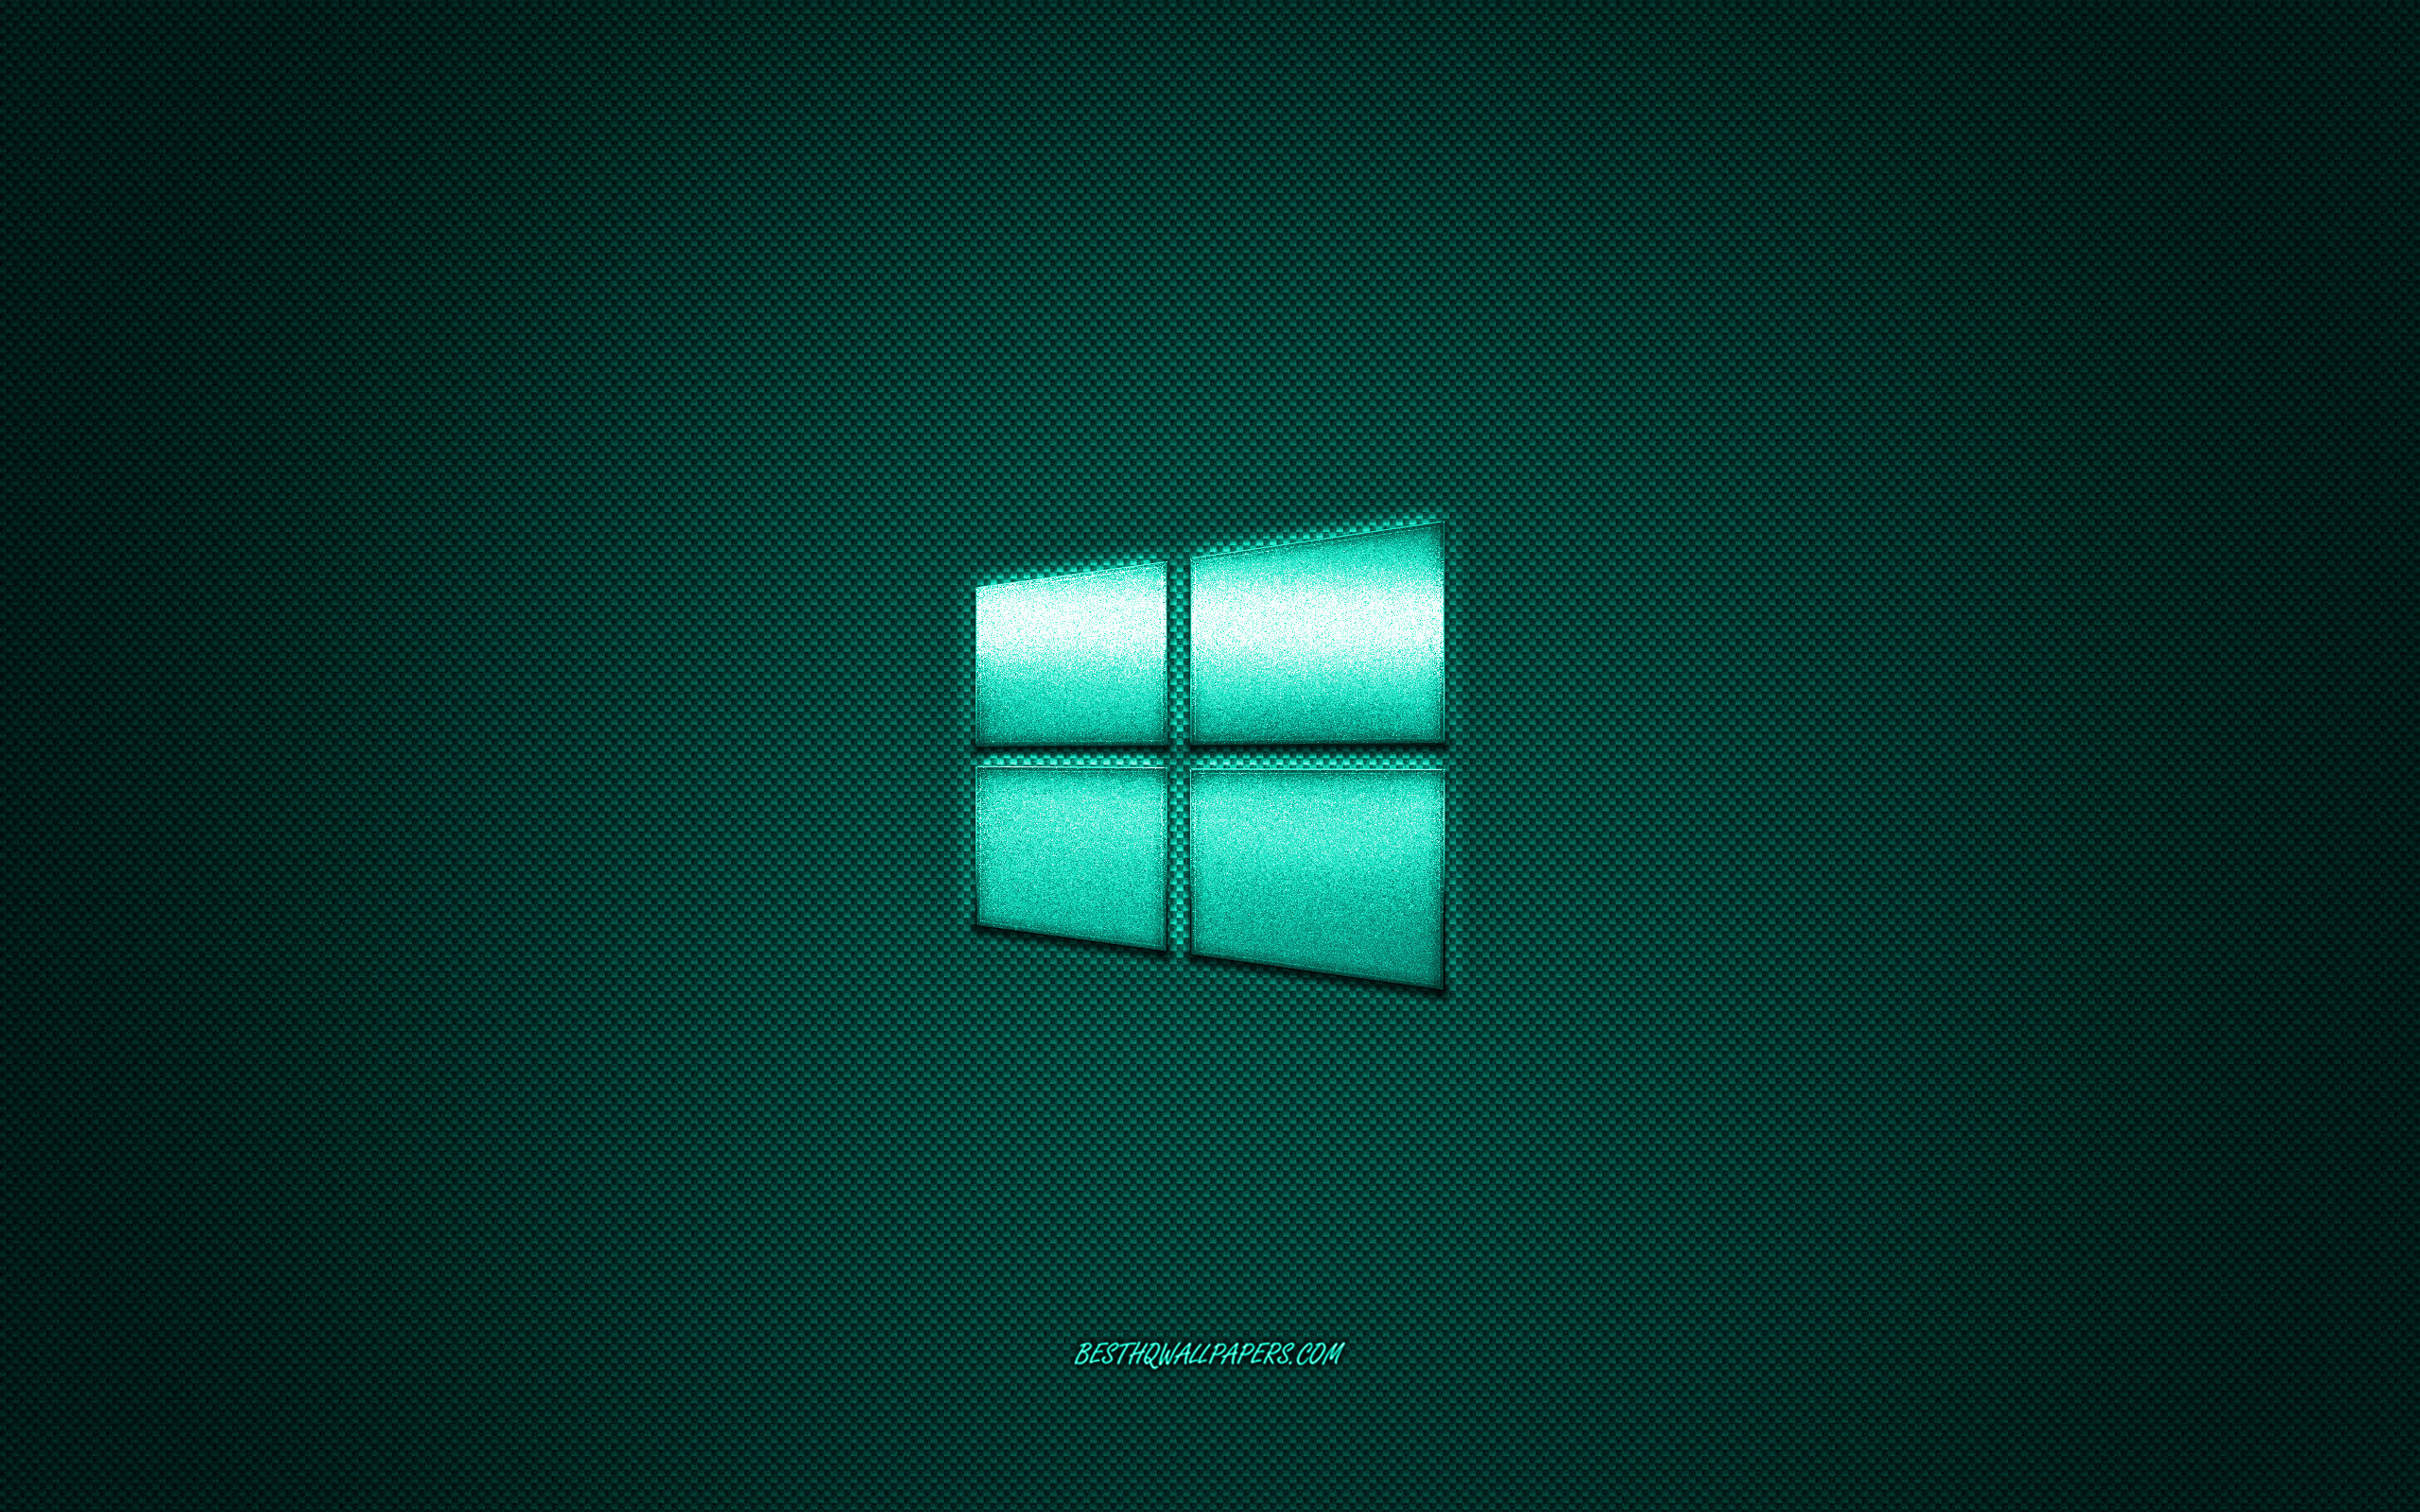 ダウンロード画像 Windows10のロゴ ターコイズブルーの光沢のあるロゴ Windows10金属エンブレム 壁紙windows用のデバイス ターコイズブルーの炭素繊維の質感 Windows ブランド クリエイティブ アート 画面の解像度 2560x1600 壁紙デスクトップ上